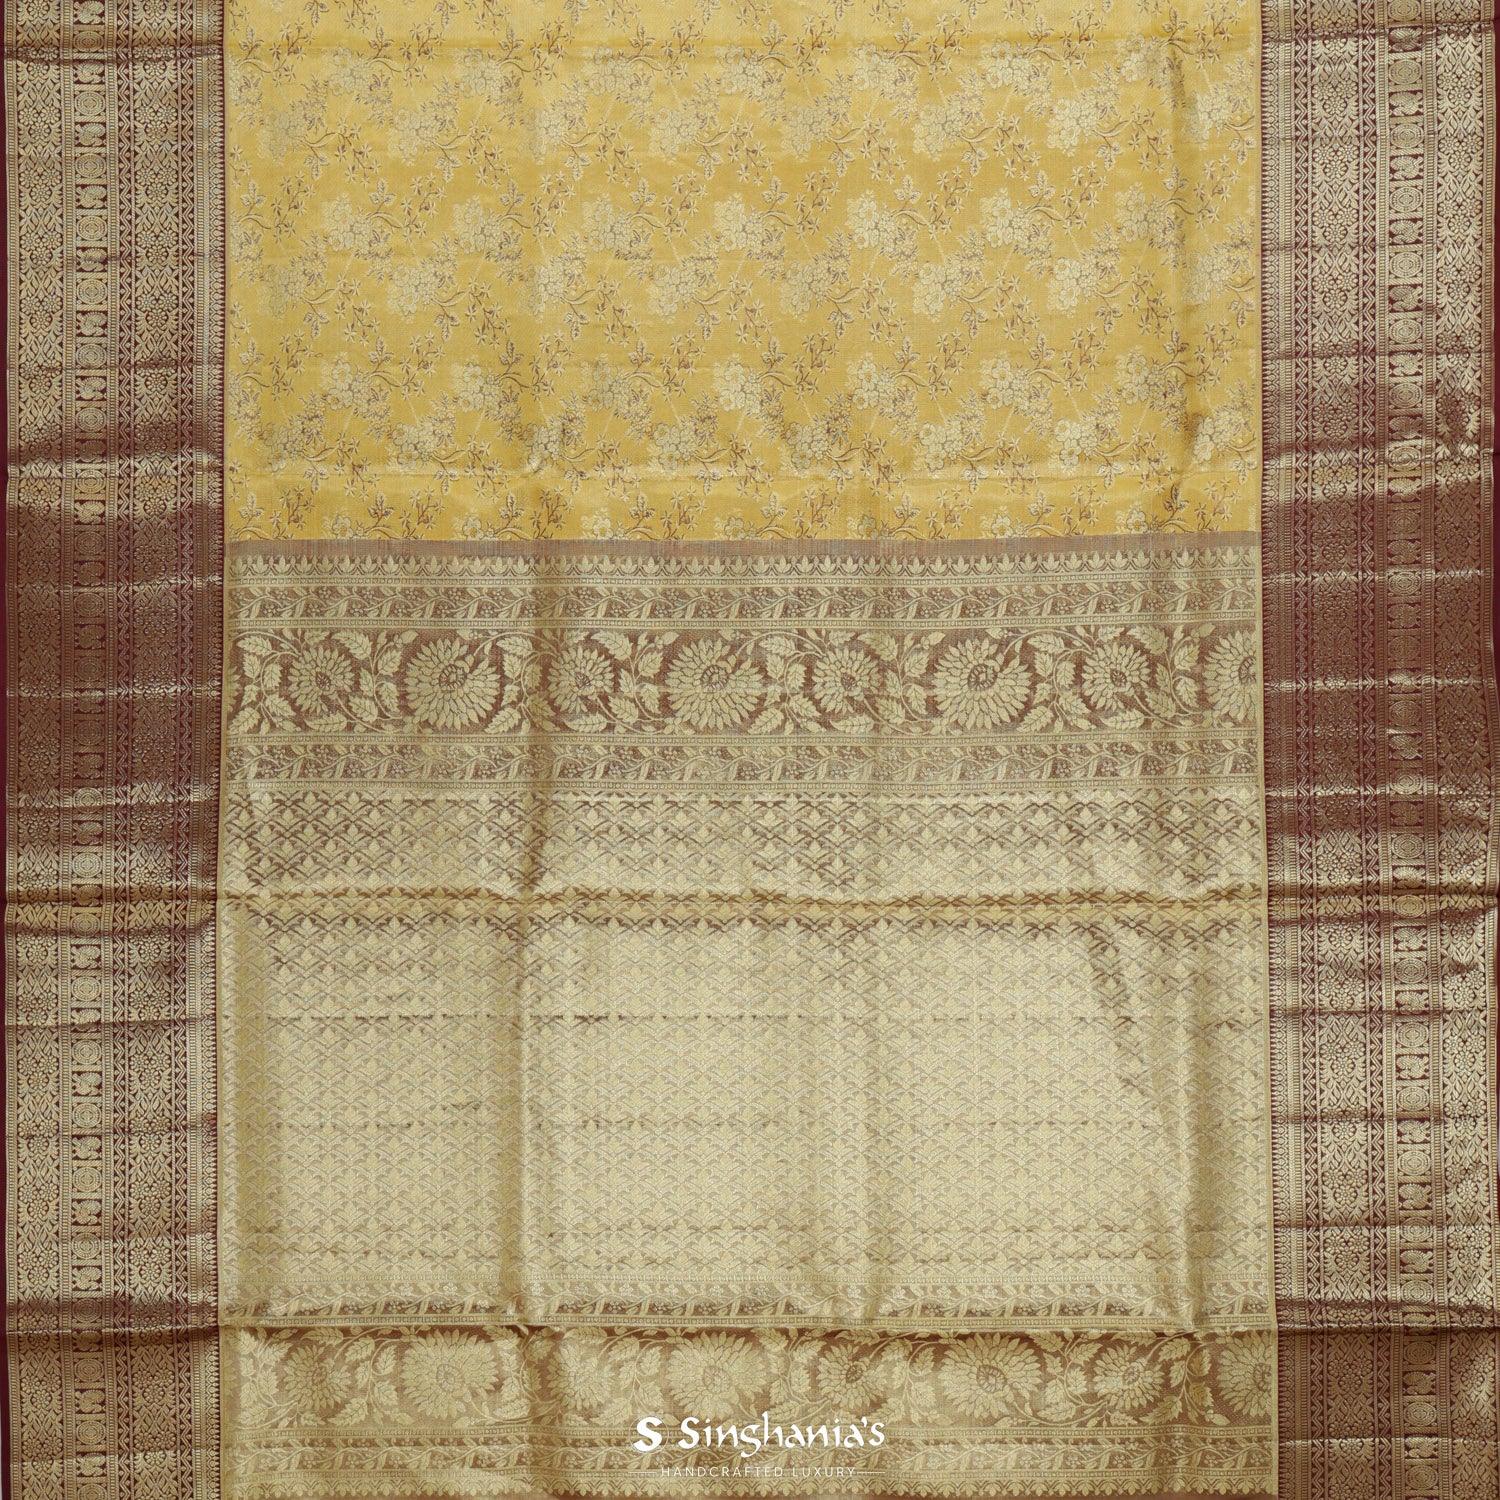 Spanish Yellow Kanjivaram Silk Saree With Floral Jaal Pattern